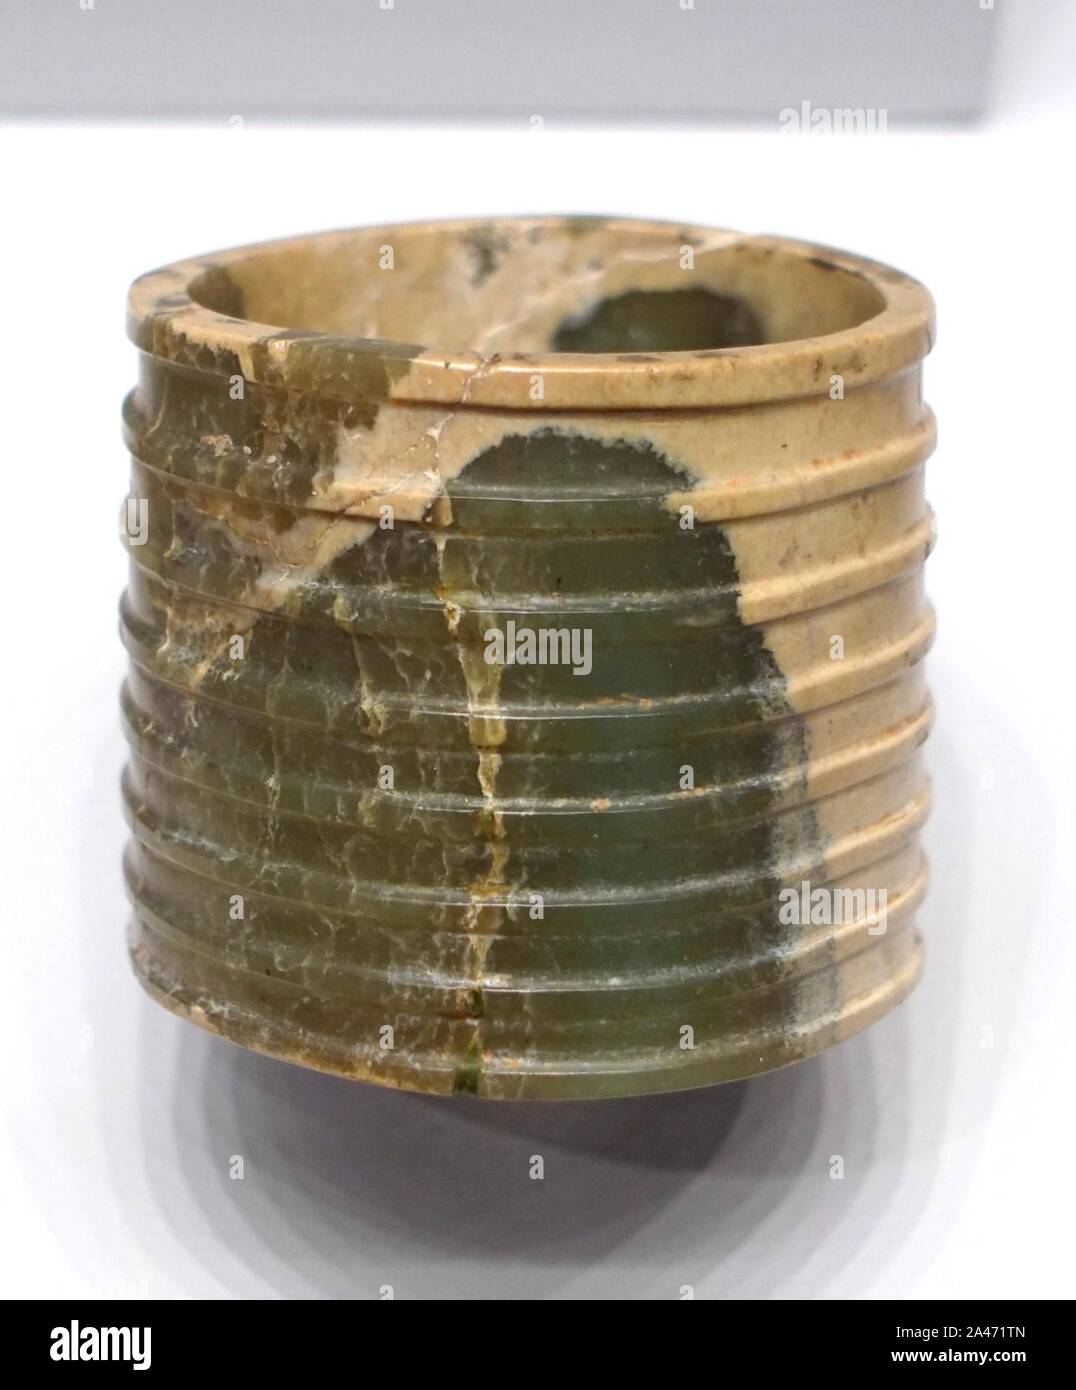 Bague cannelée, Chine, probablement la province de Shandong, néolithique, la culture de Longshan, 2500-2000 avant J.-C., la néphrite Banque D'Images